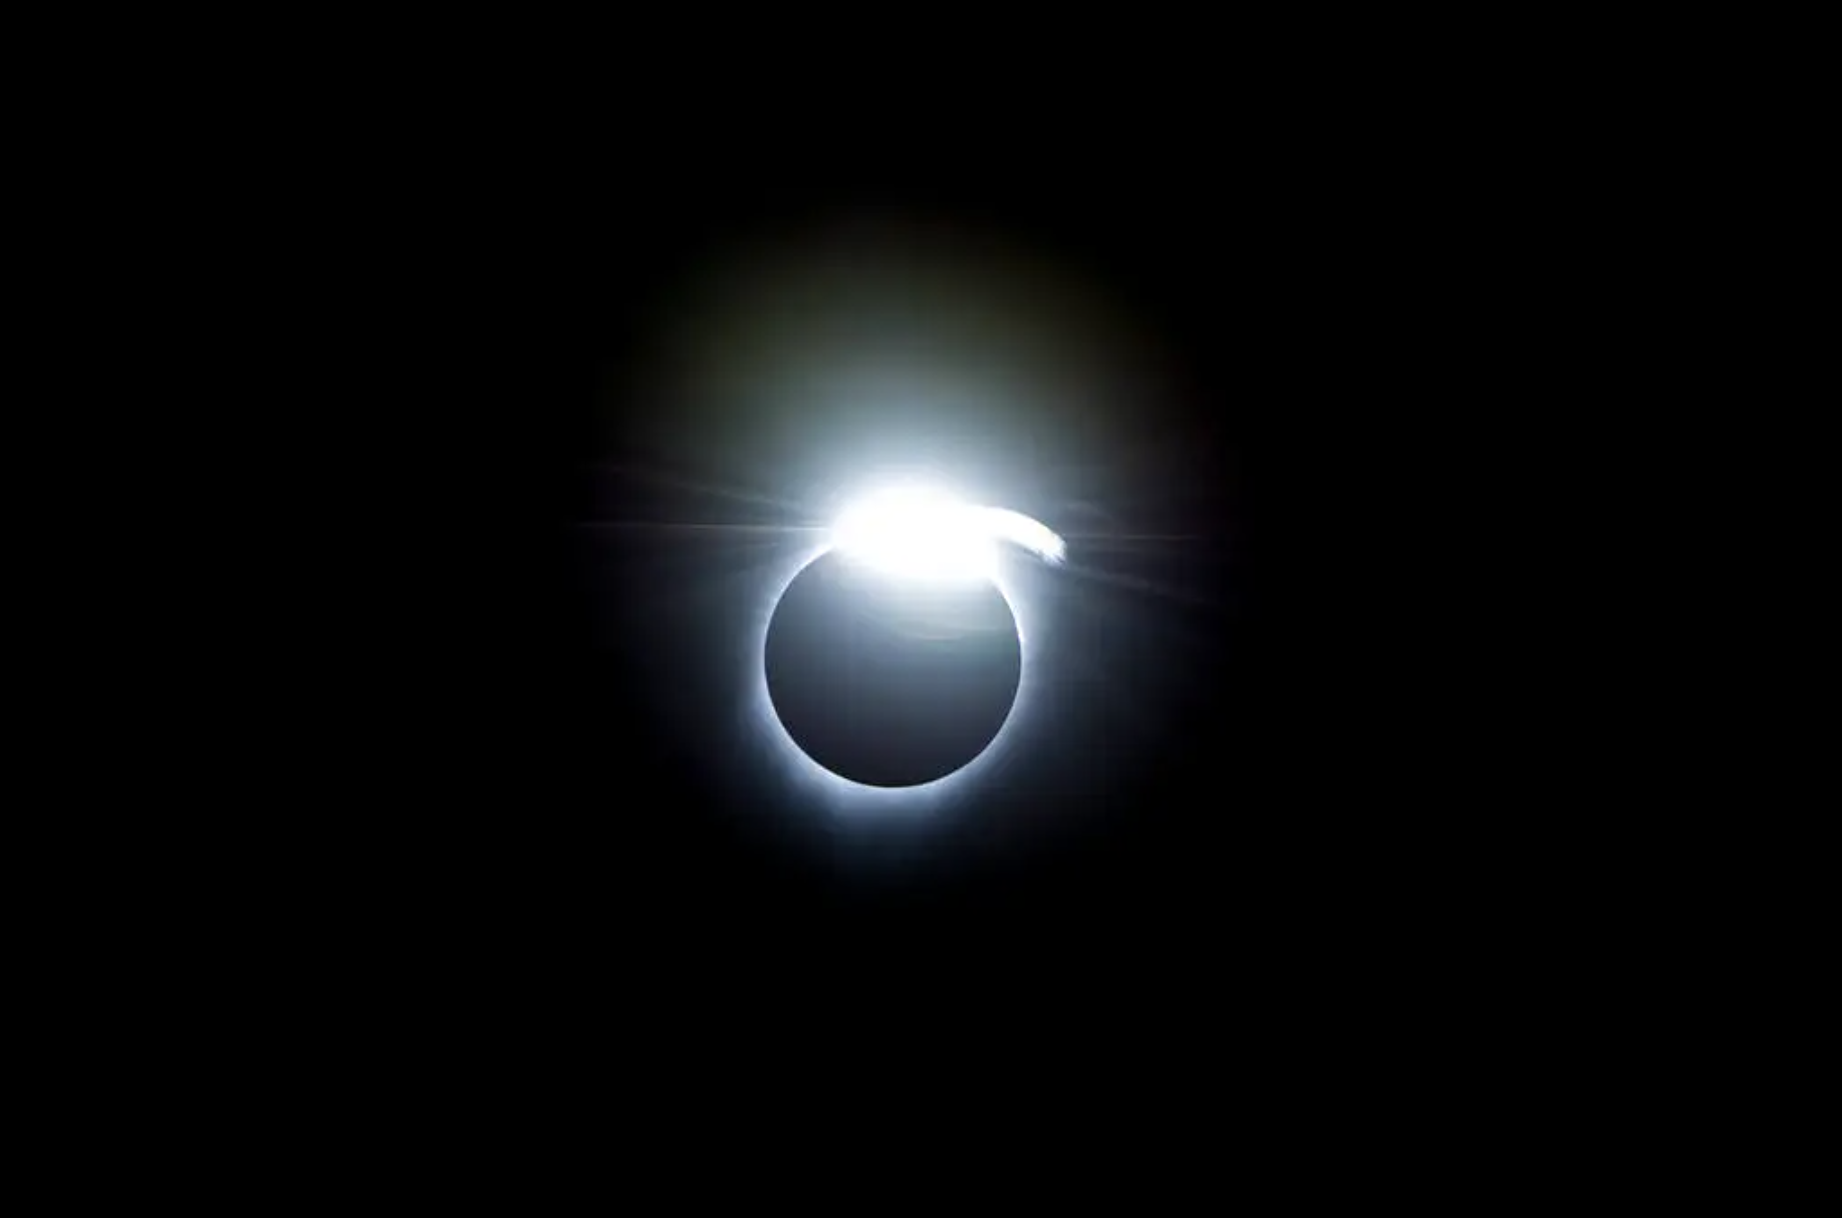 La imagen muestra un ejemplo del efecto de anillo de diamantes, que ocurrió al principio y al final de la totalidad durante un eclipse solar total el 21 de agosto de 2017. Un halo blanco y muy brillante rodea la figura del Sol eclipsado, más notablemente arriba y en el centro. El fondo es negro.